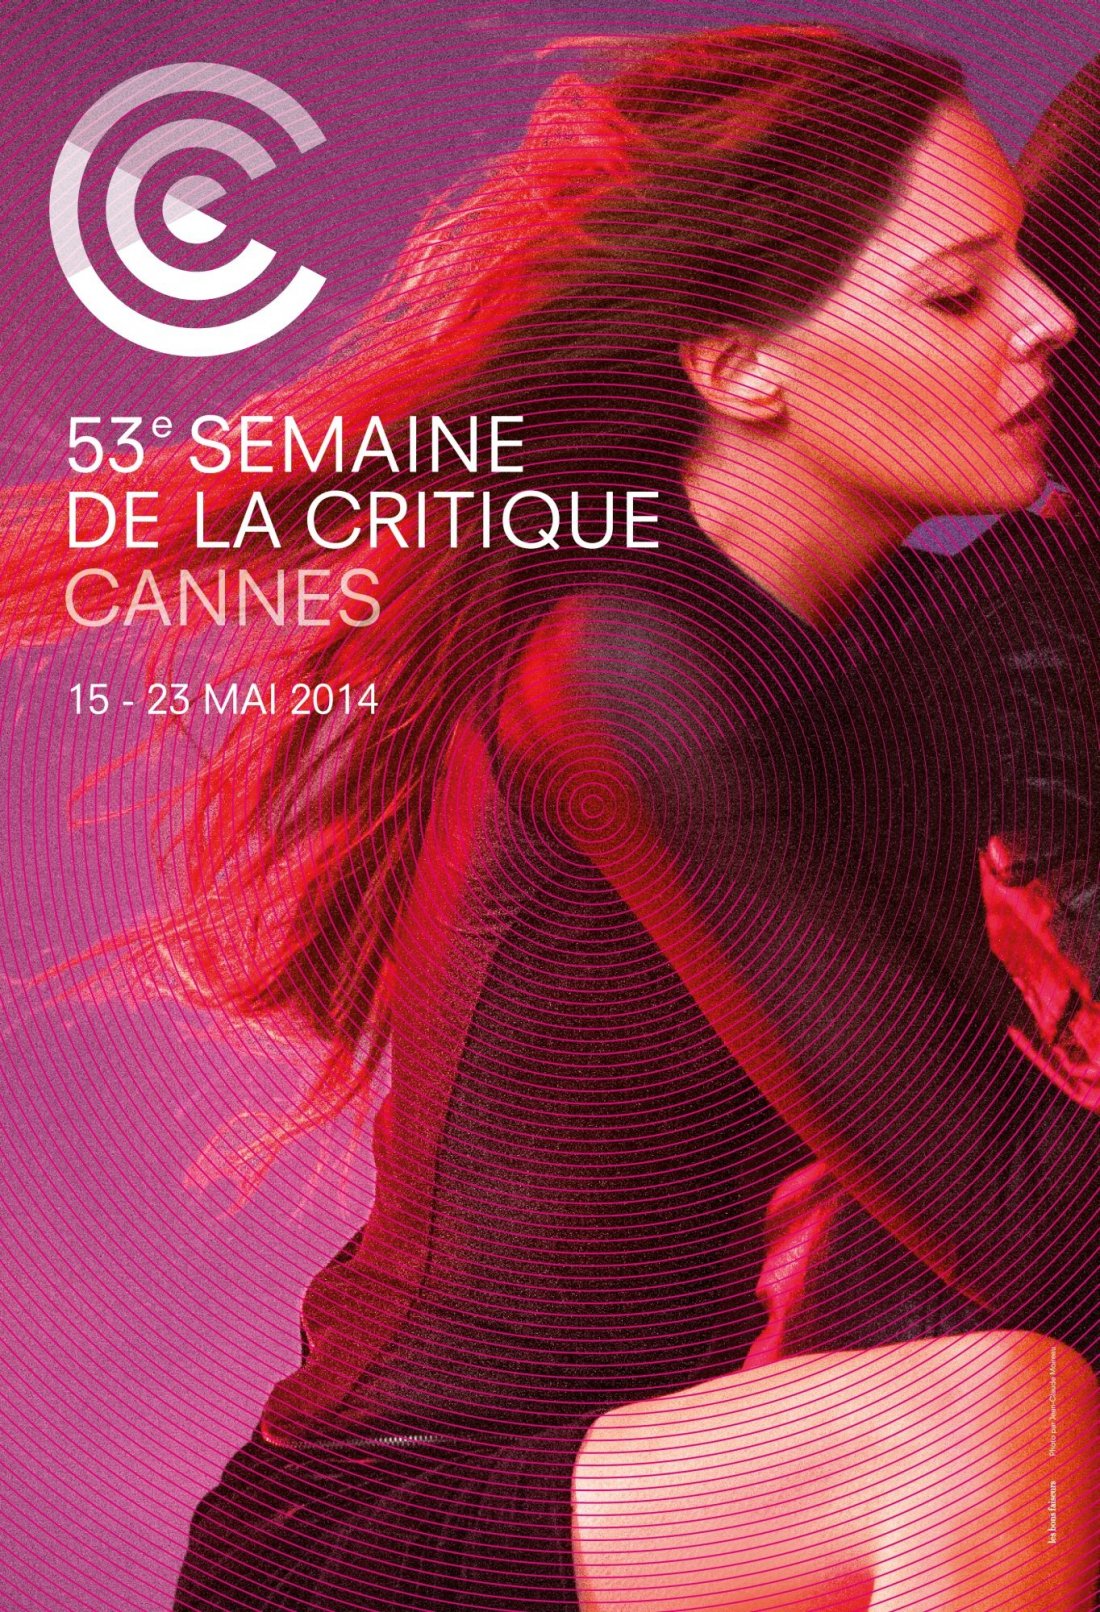 Cannes 2014 Il Poster Della 53 Semaine De La Critique 334927